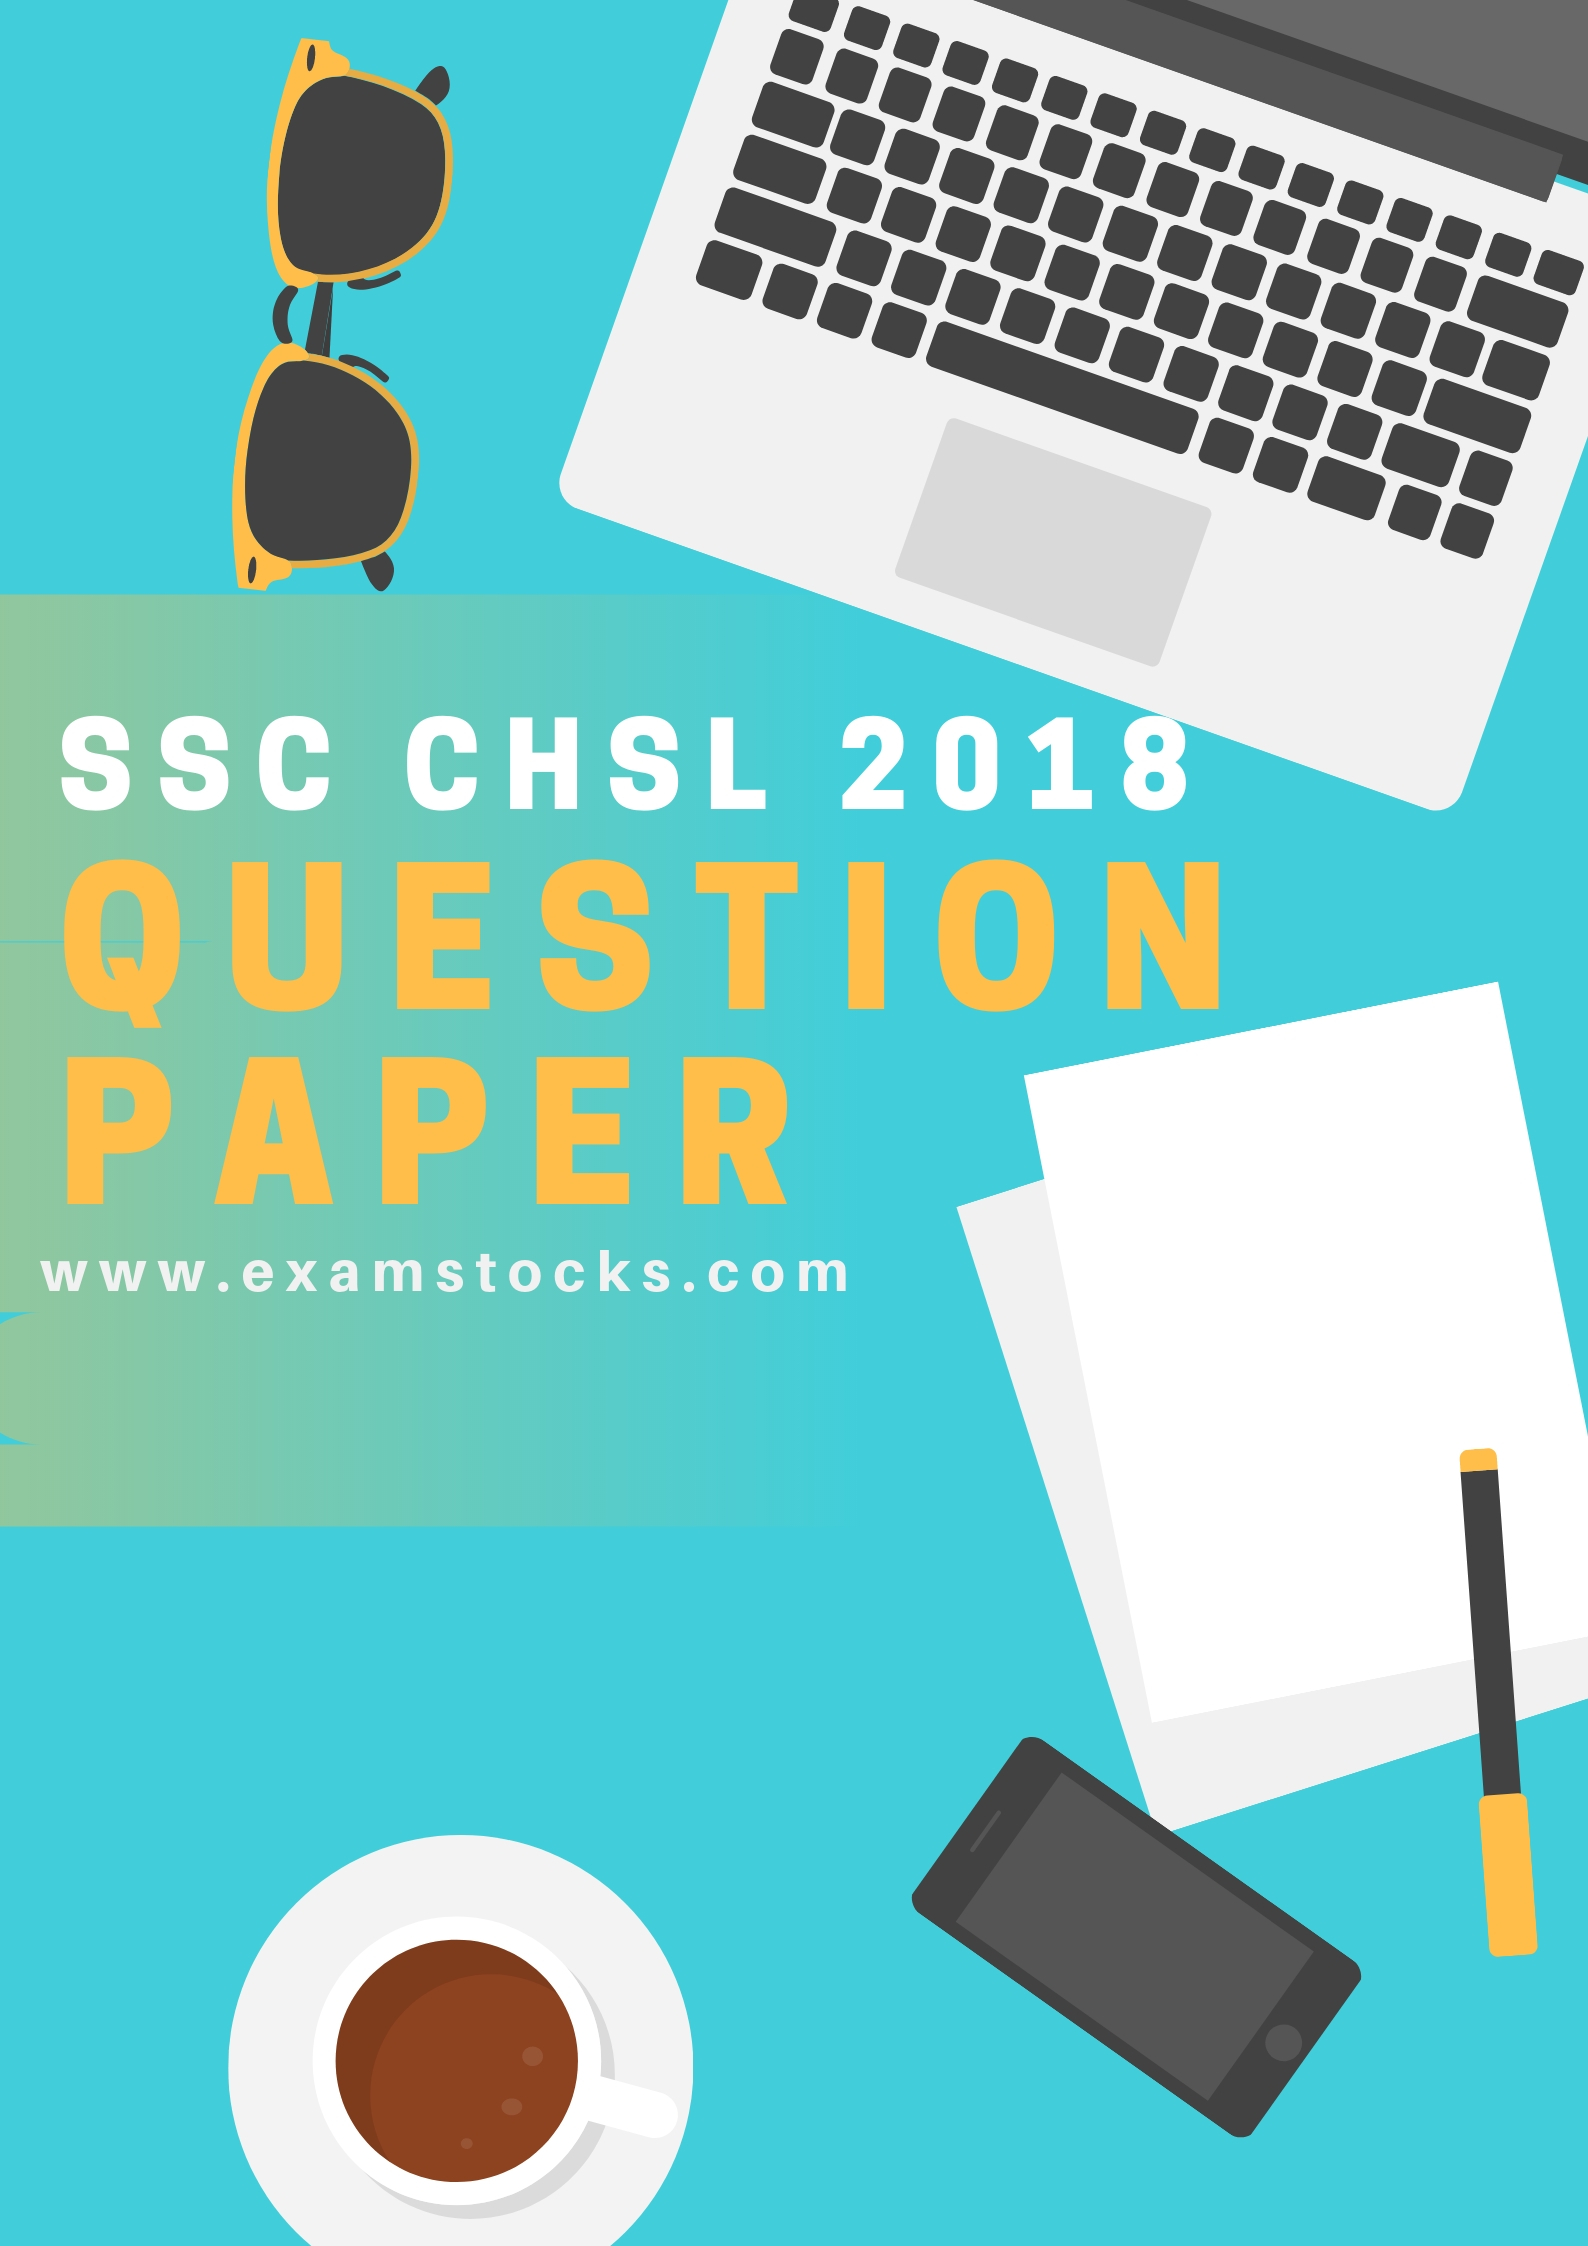 SSC CHSL Question Paper 2018 PDF